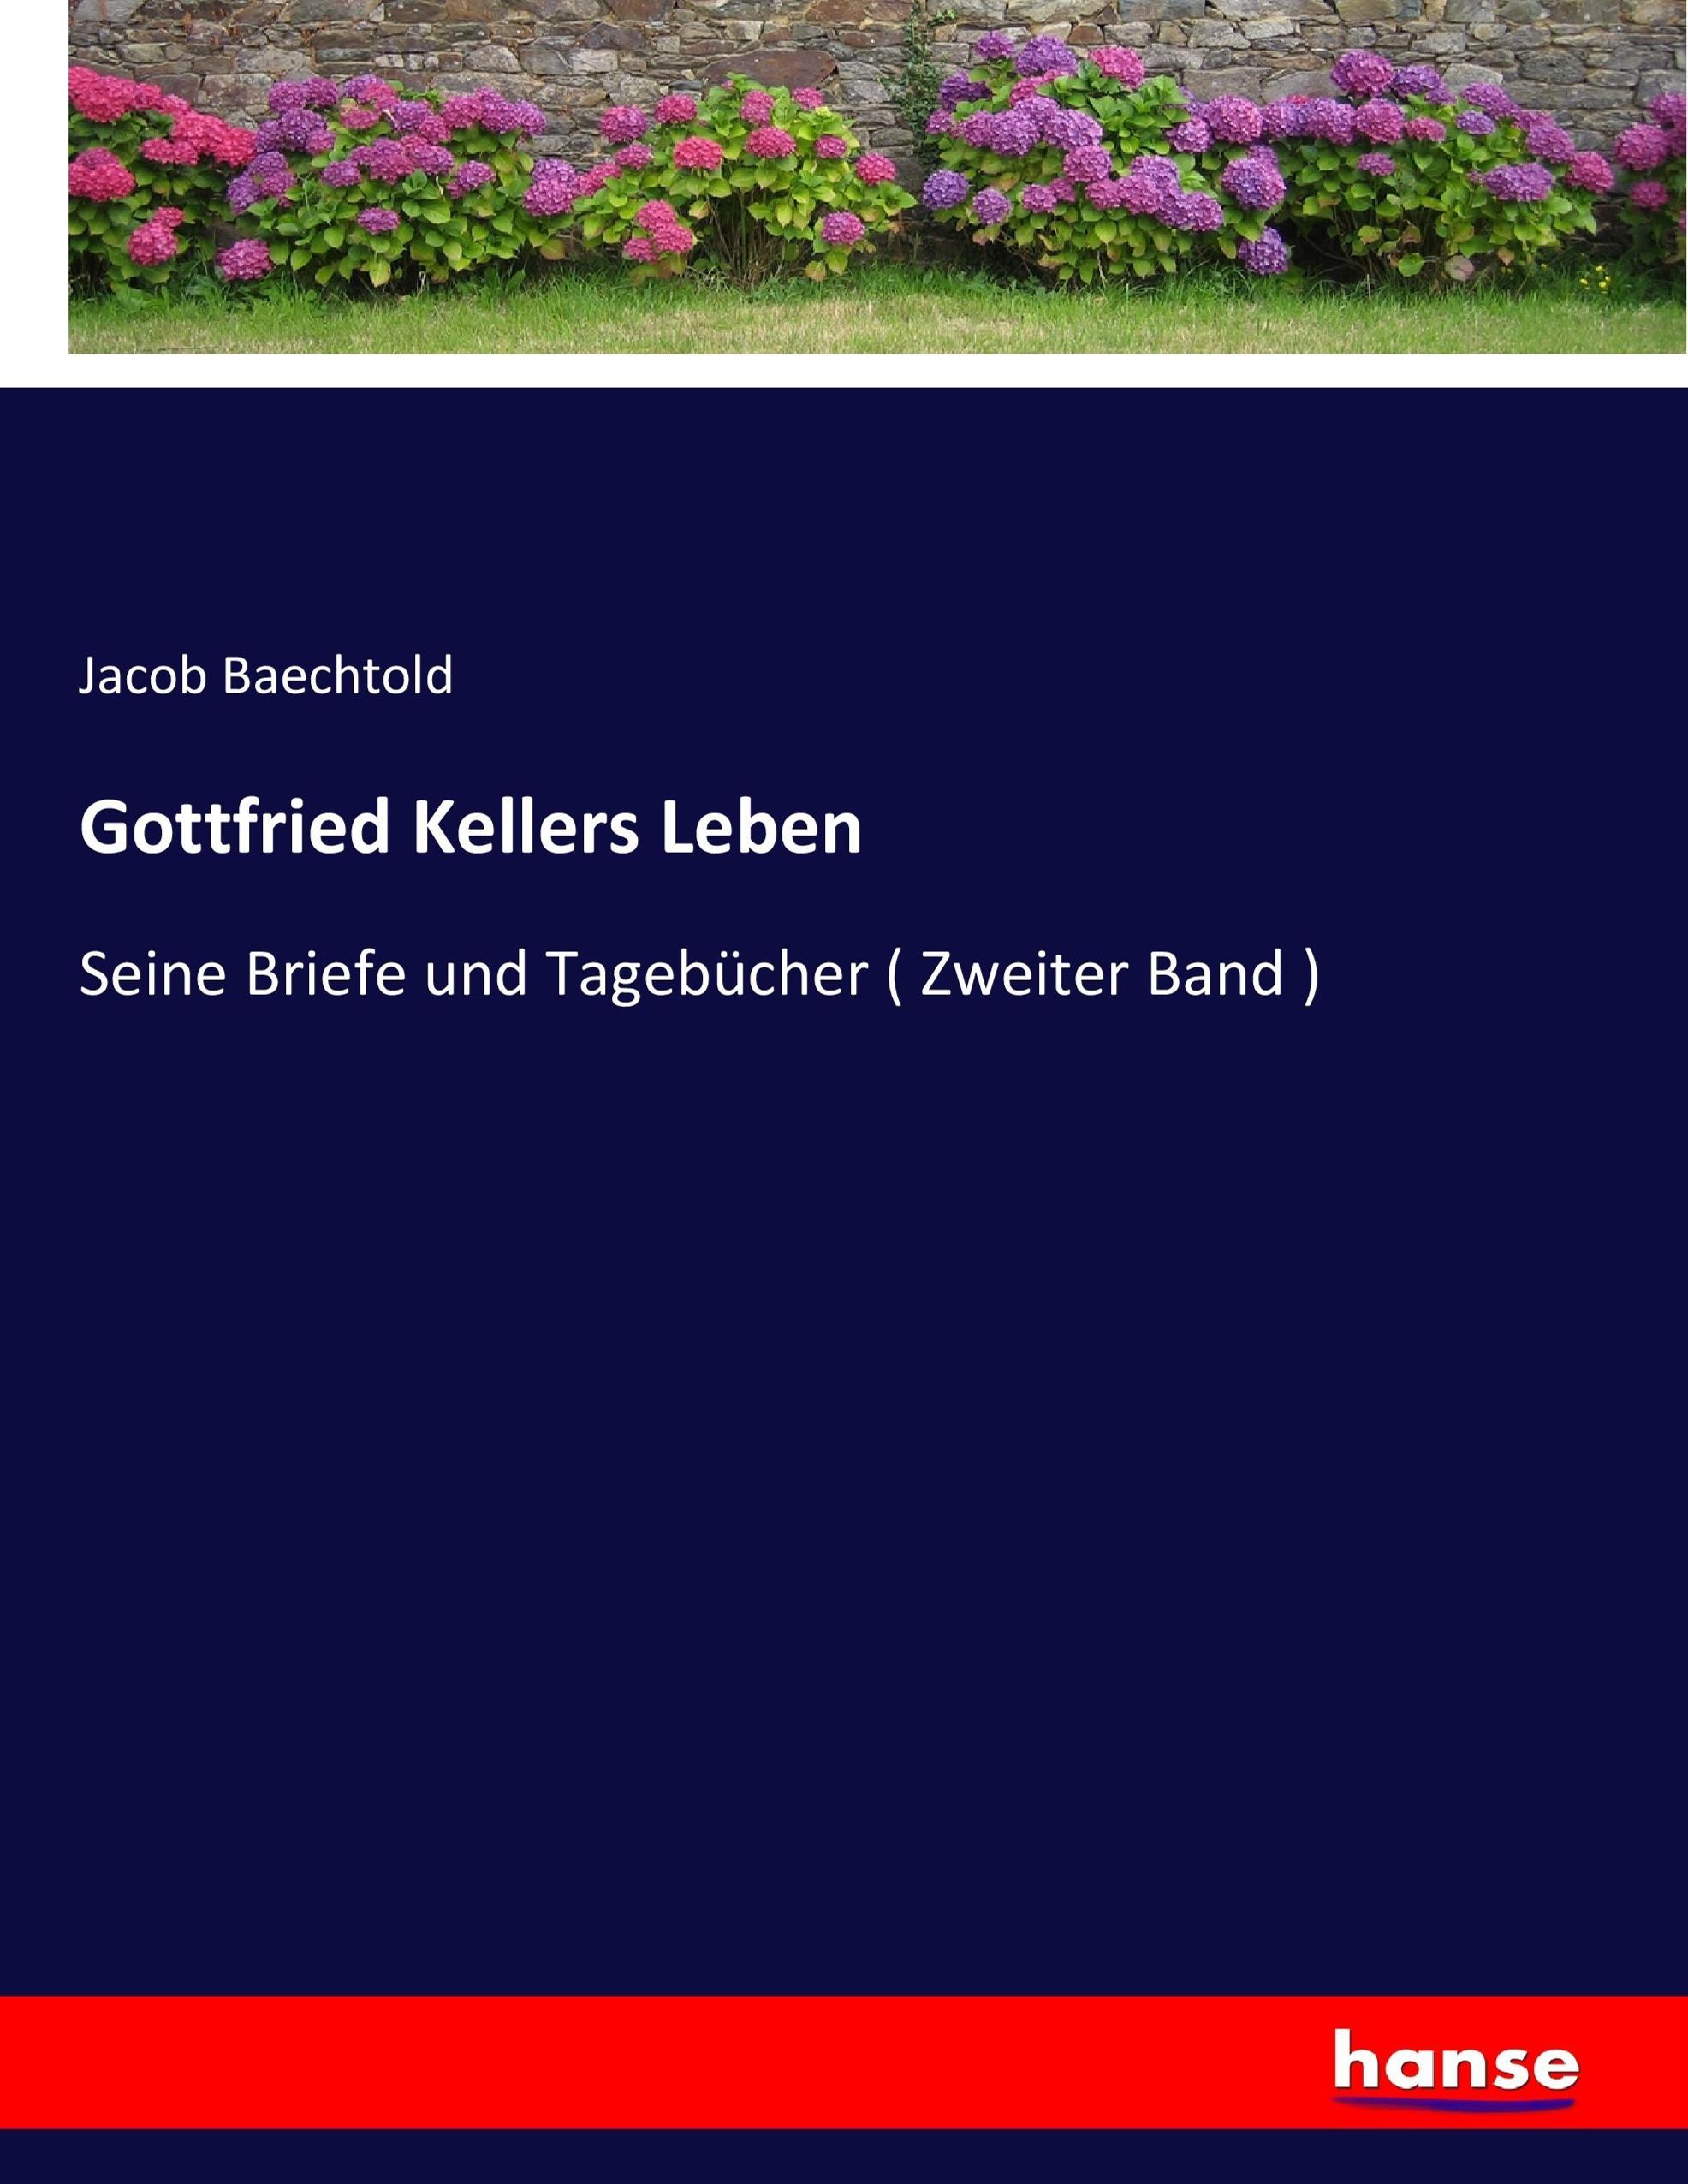 Gottfried Kellers Leben / Seine Briefe und Tagebücher ( Zweiter Band ) / Jacob Baechtold / Taschenbuch / Paperback / 552 S. / Deutsch / 2018 / hansebooks / EAN 9783743432680 - Baechtold, Jacob